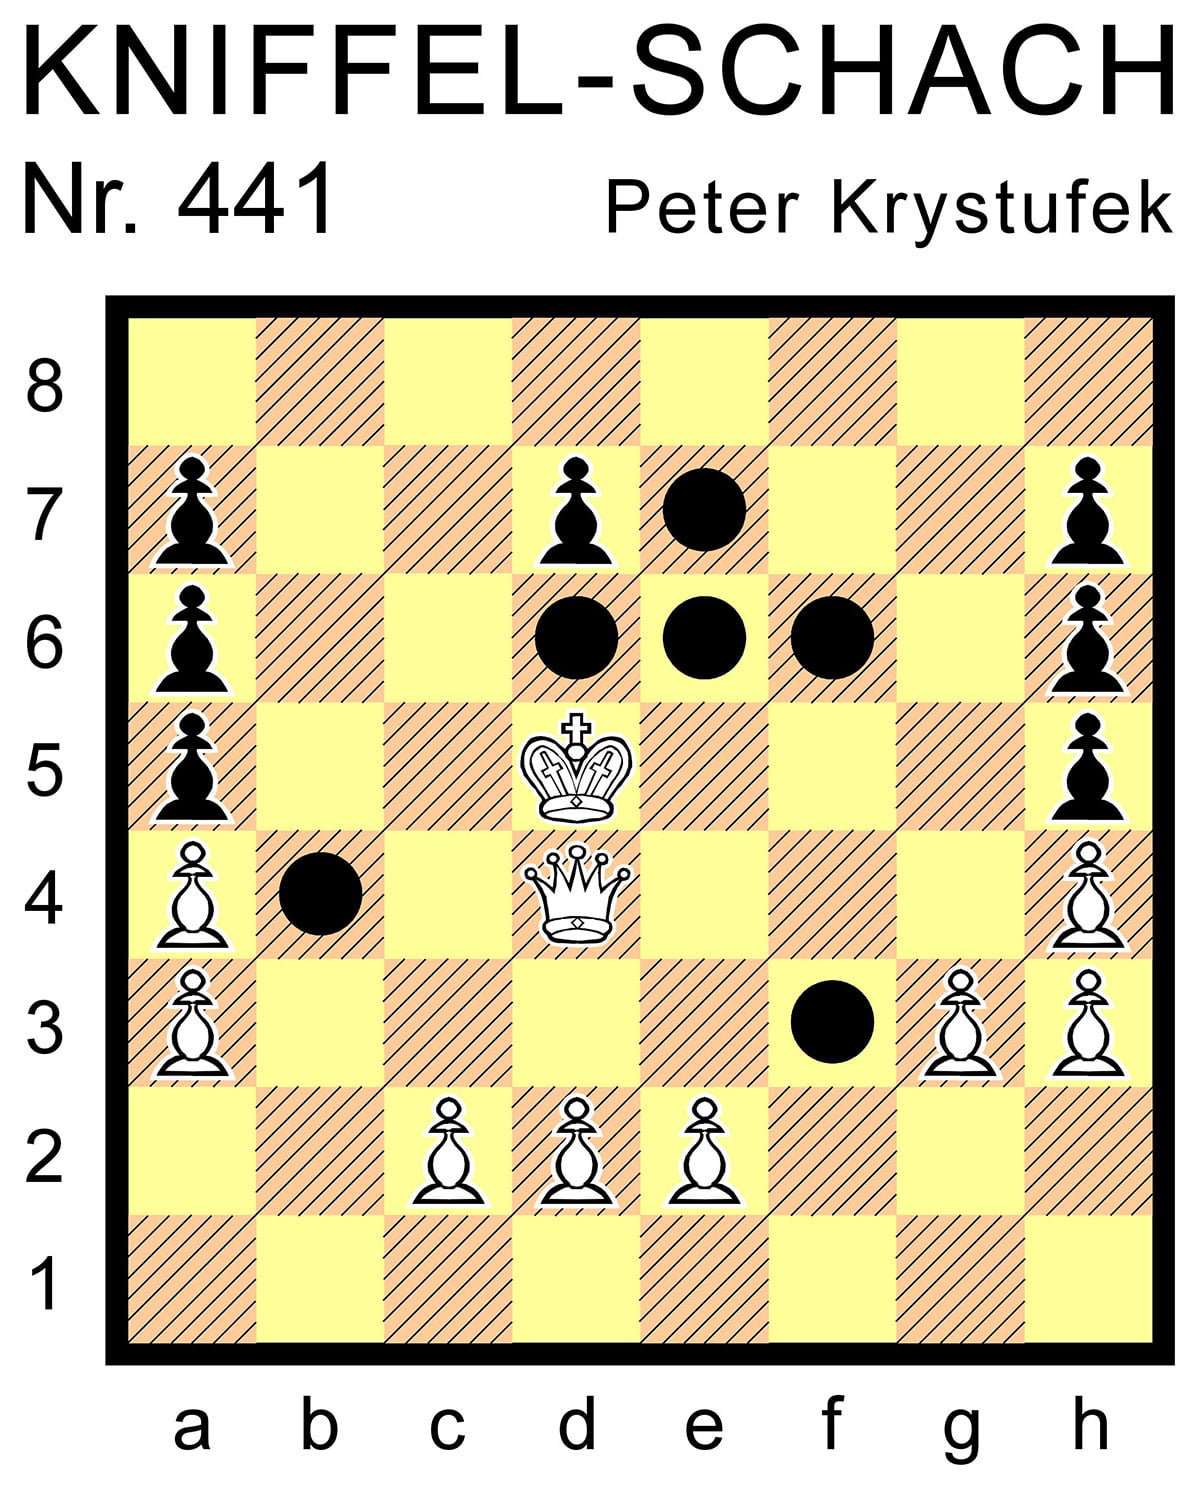 Kniffel-Schach Nr. 441